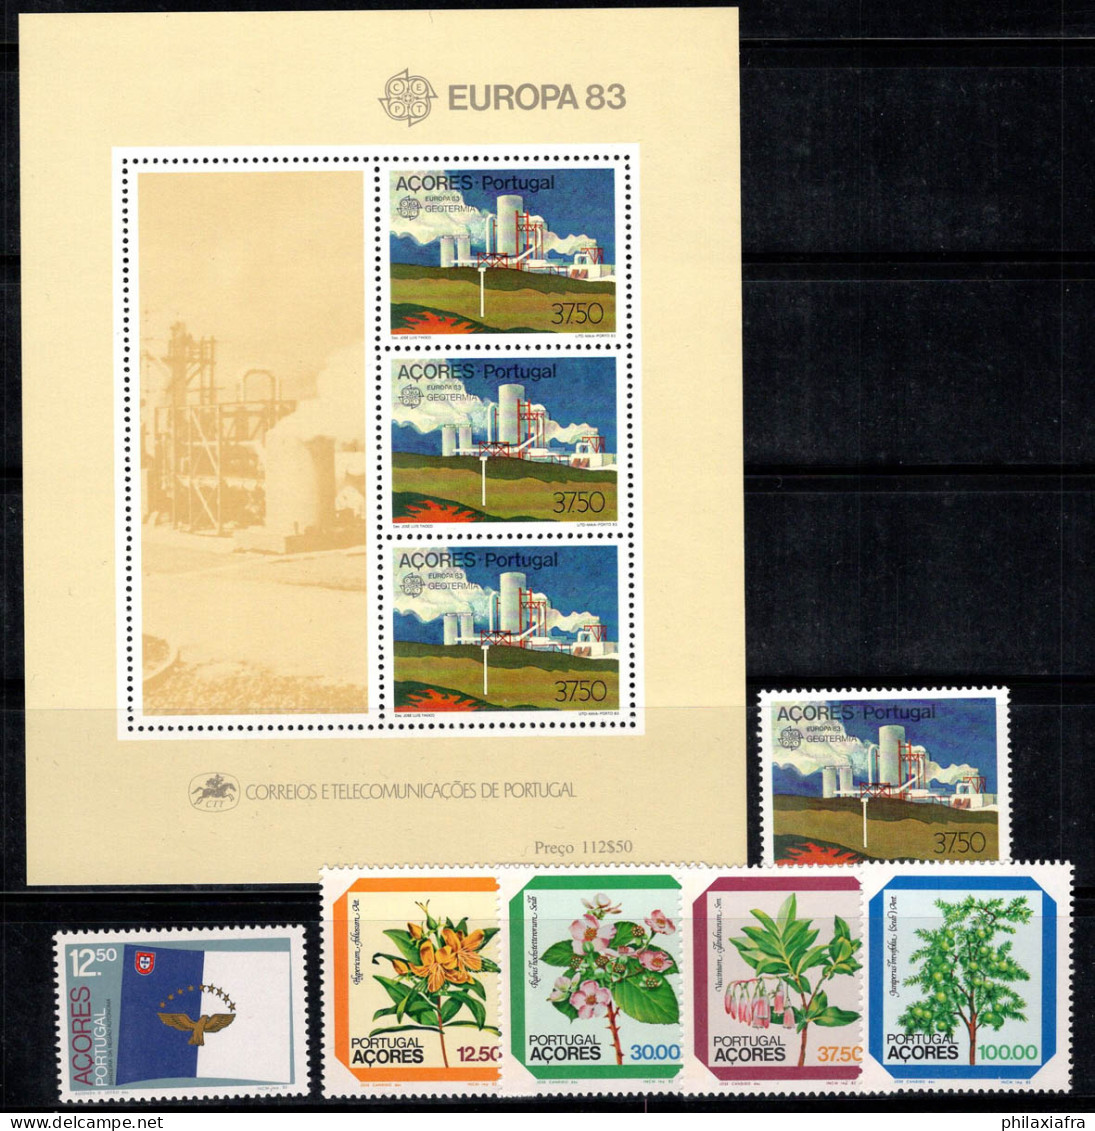 Açores 1982 Mi. Bl. 4, 356-361 Bloc Feuillet 100% Neuf ** Europa Cept, Fleurs, Flore - Azores